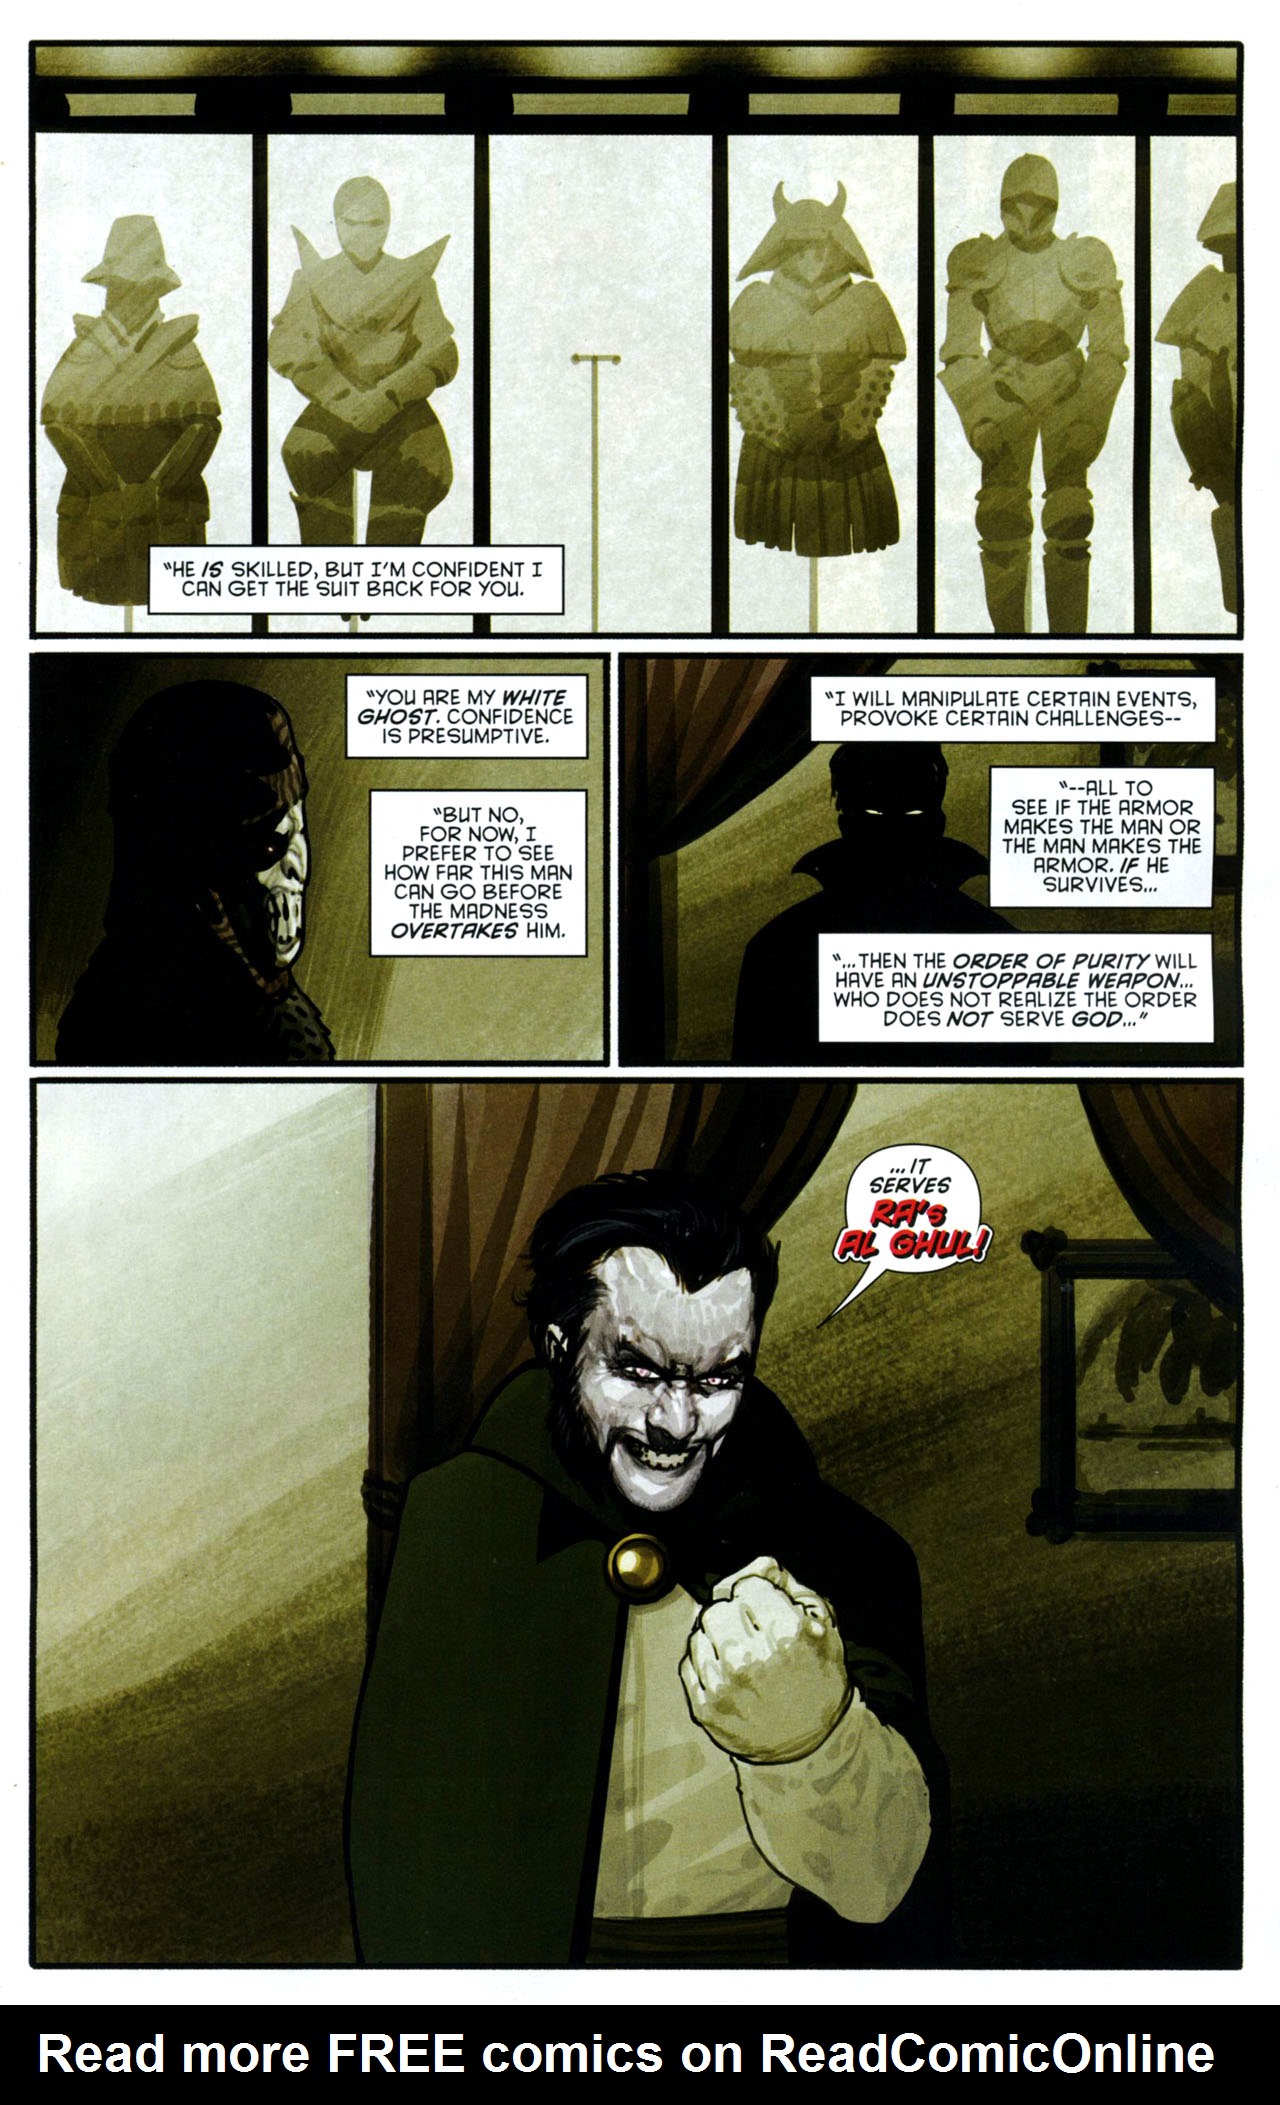 Azrael Death S Dark Knight Issue 3 Read Azrael Death S Dark Knight Issue 3 Comic Online In